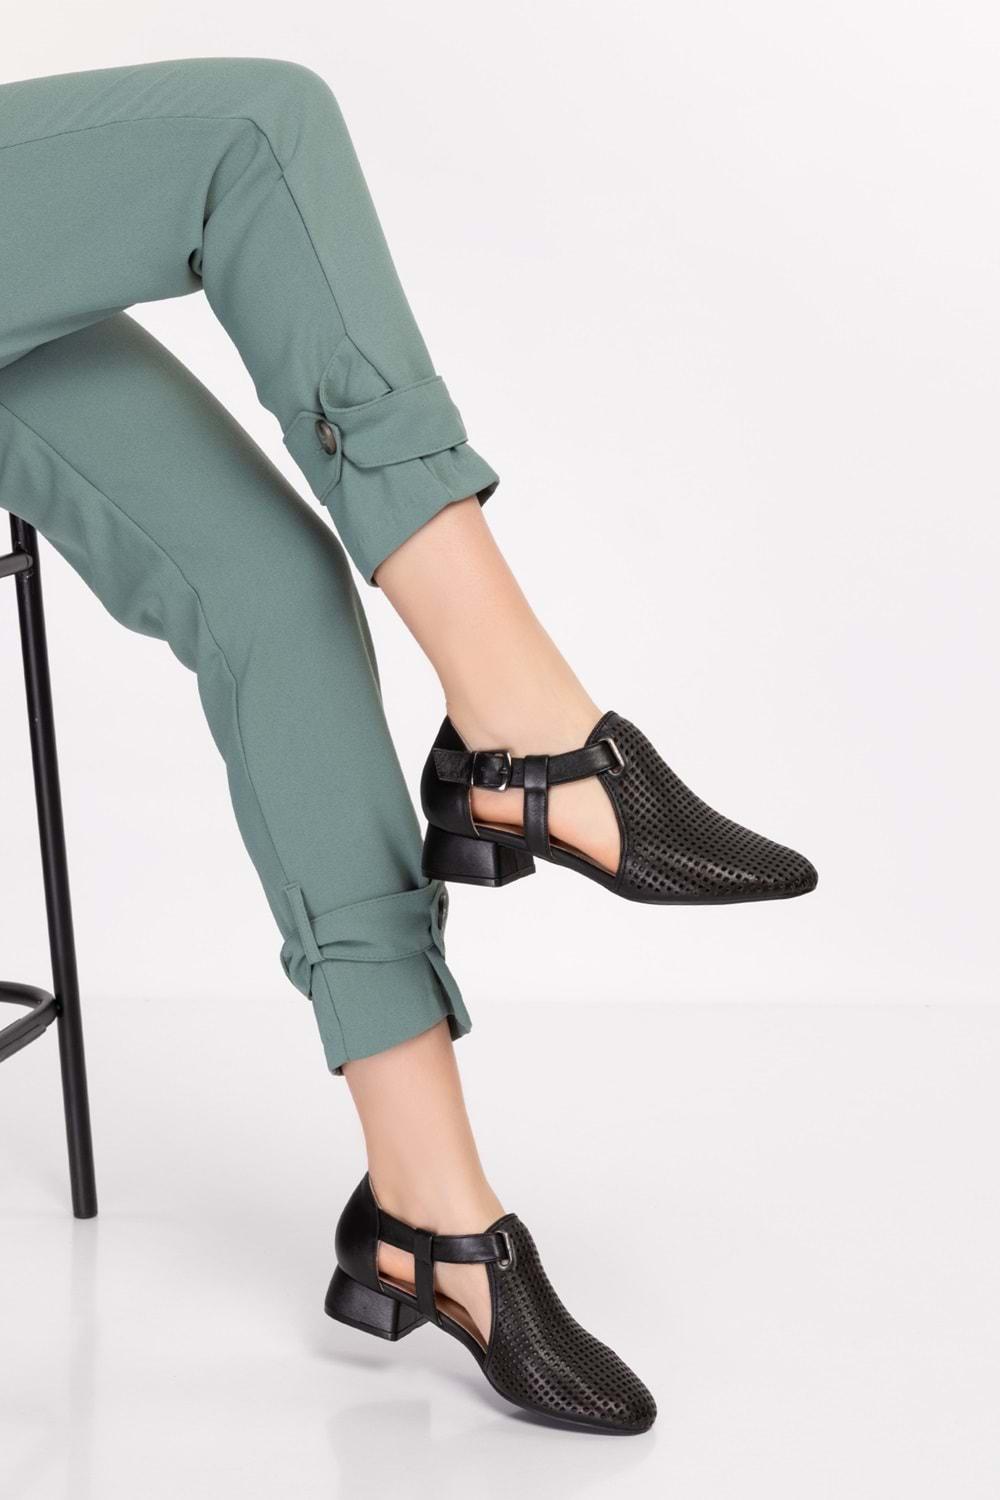 Gondol Kadın Hakiki Deri Lazer Kesim Topuklu Ayakkabı ast.6400 - Siyah - 35